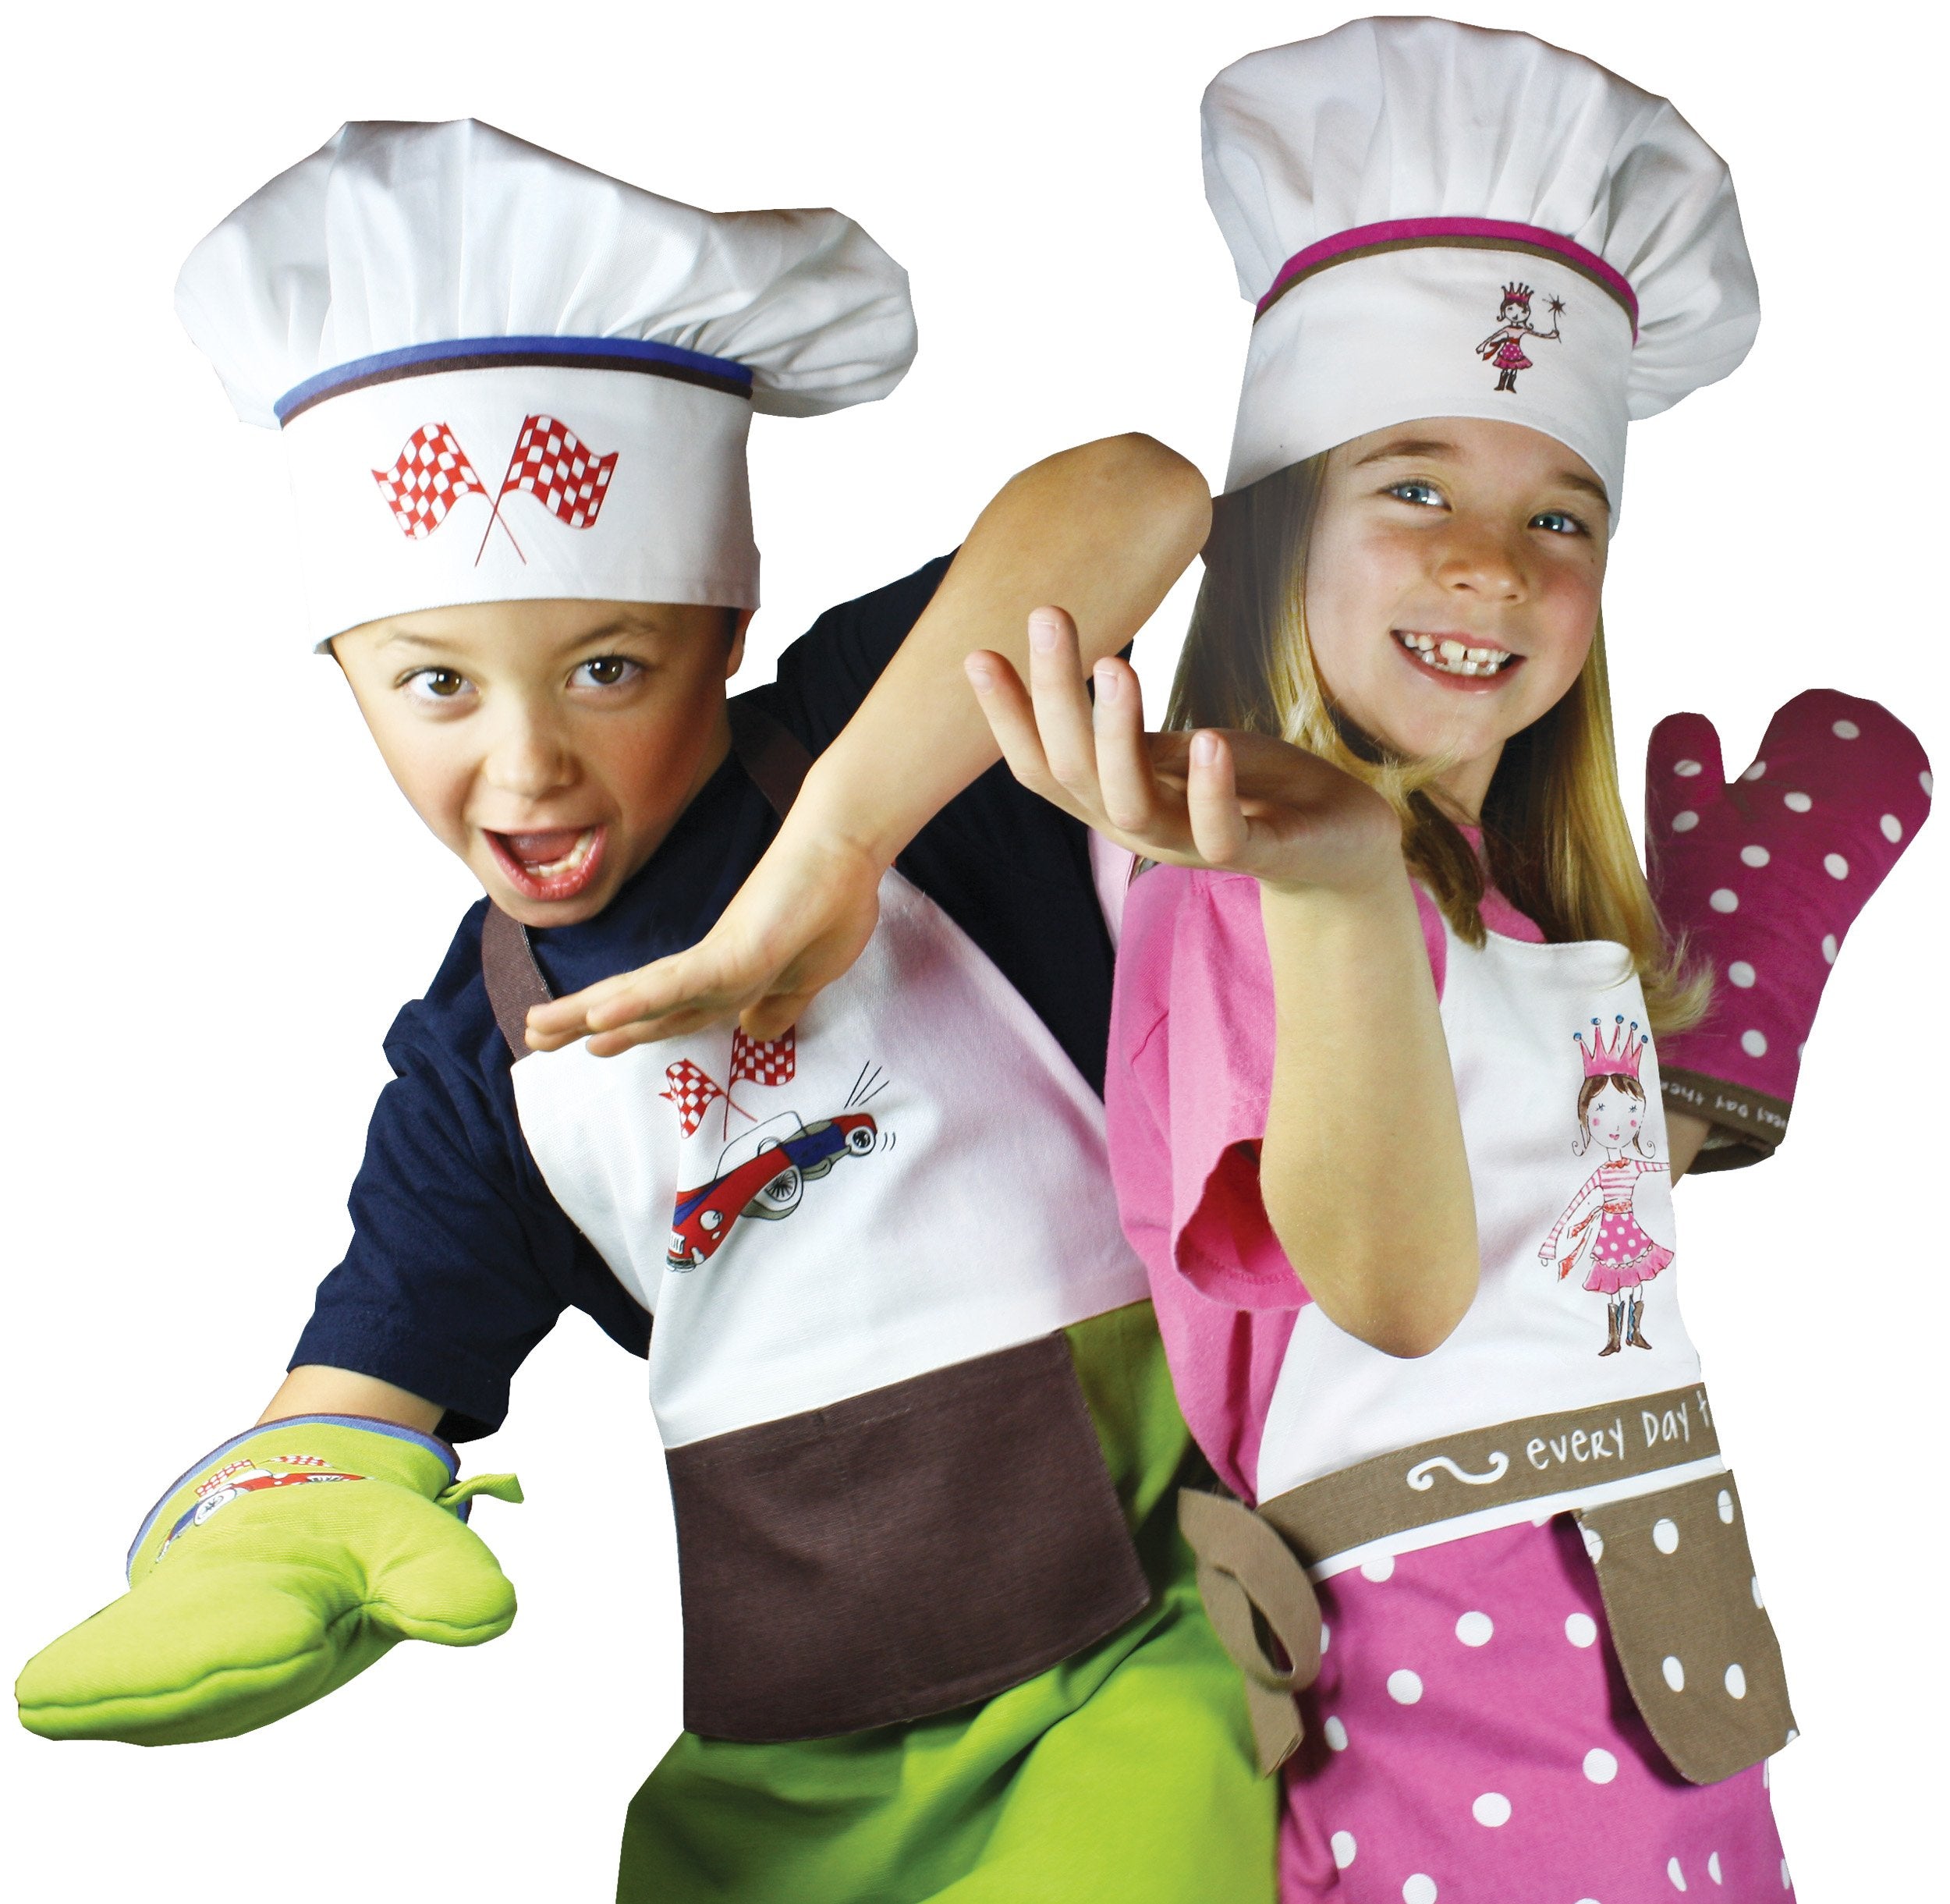 MUkitchen MiniMu Kids 3-Piece Cotton Chef Set with Apron, Hat and Mitt, Princess